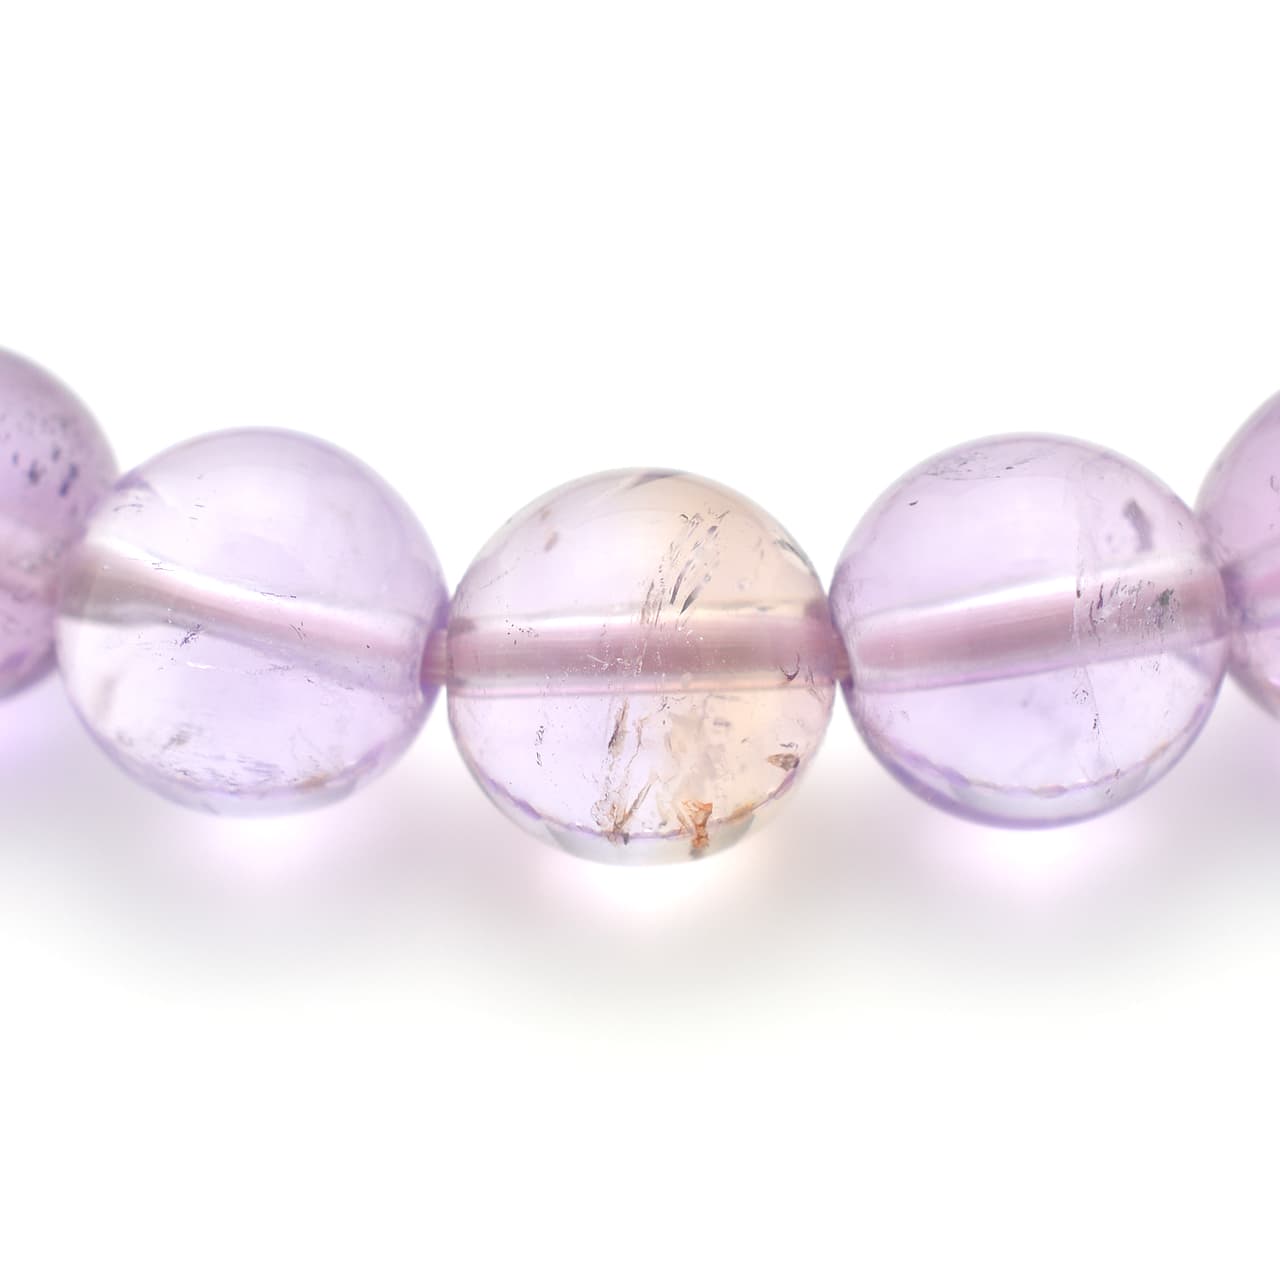 天然アメトリン(紫黄水晶) - 8mm玉、サイズ15、17cm | 天然石ブレスレットのご購入 | パワーストーンショップ彌吉(ヤキチ)